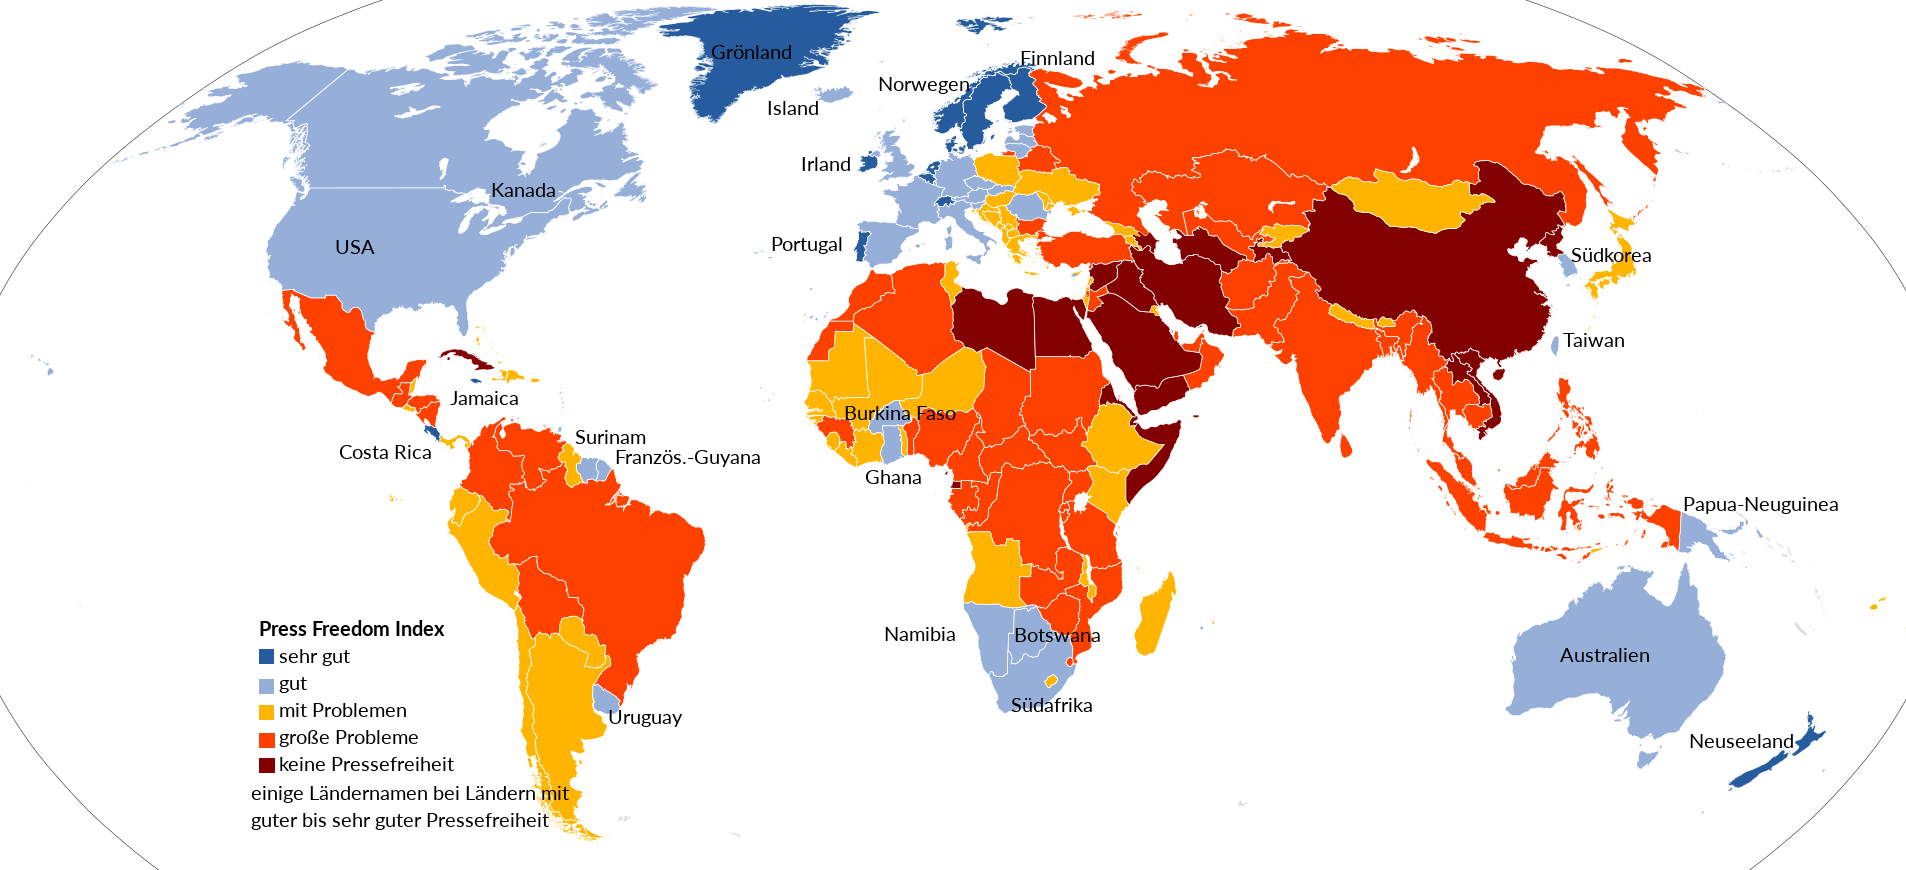 Weltkarte zur Rangliste der Pressefreiheit, Laender eingefaerbt entsprechende ihrer Stellung in der Rangliste